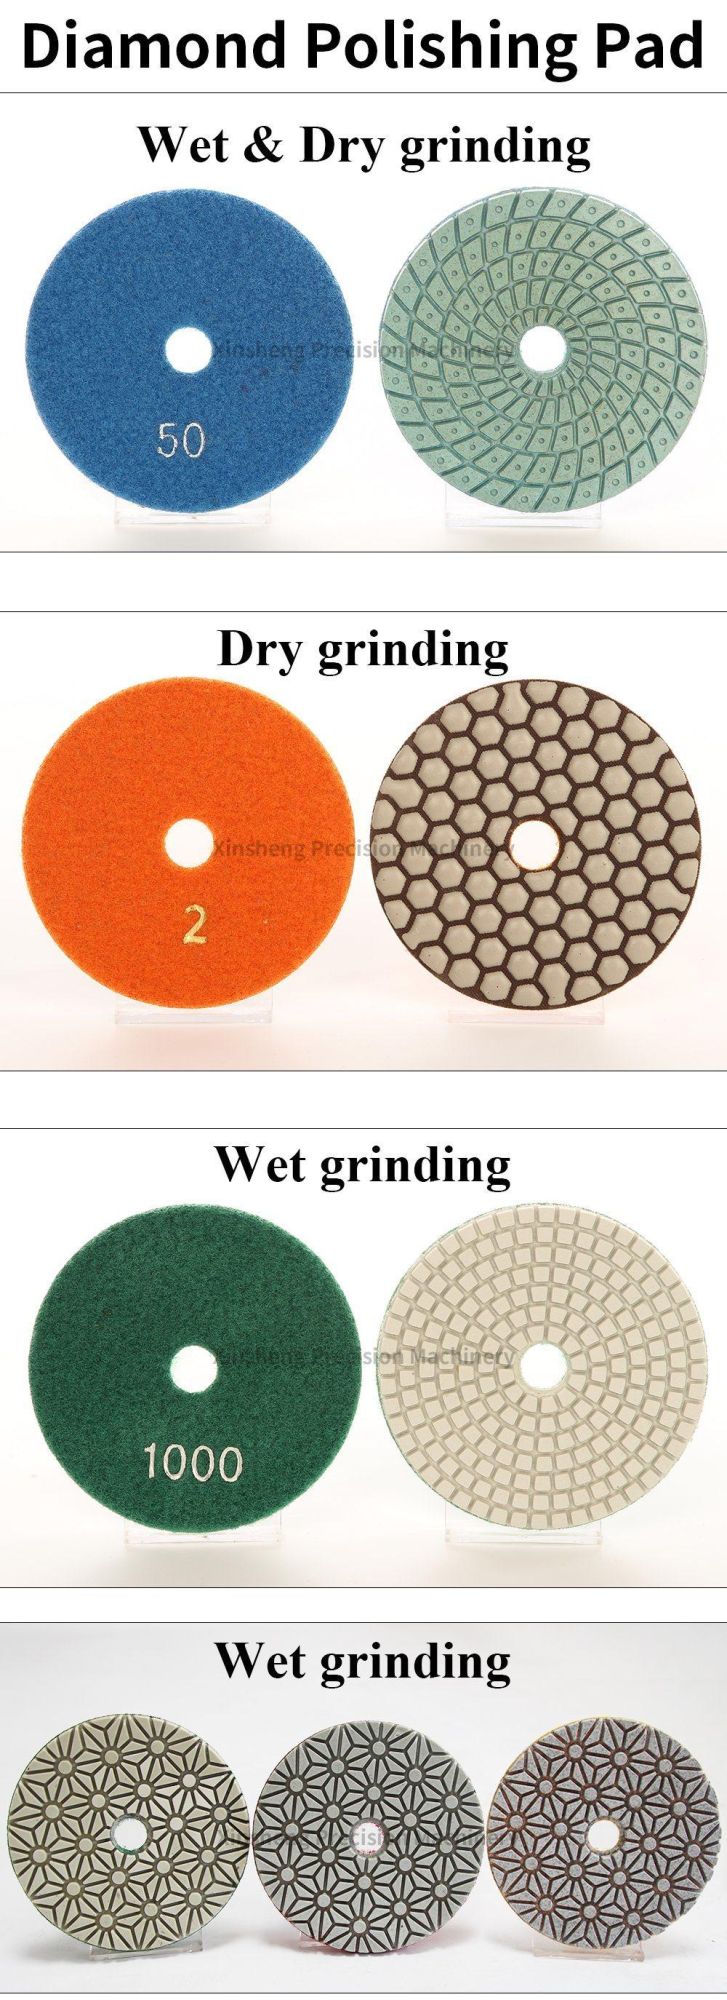 Circular Dry Diamond Polishing Pad for Marble with Angle Grinder